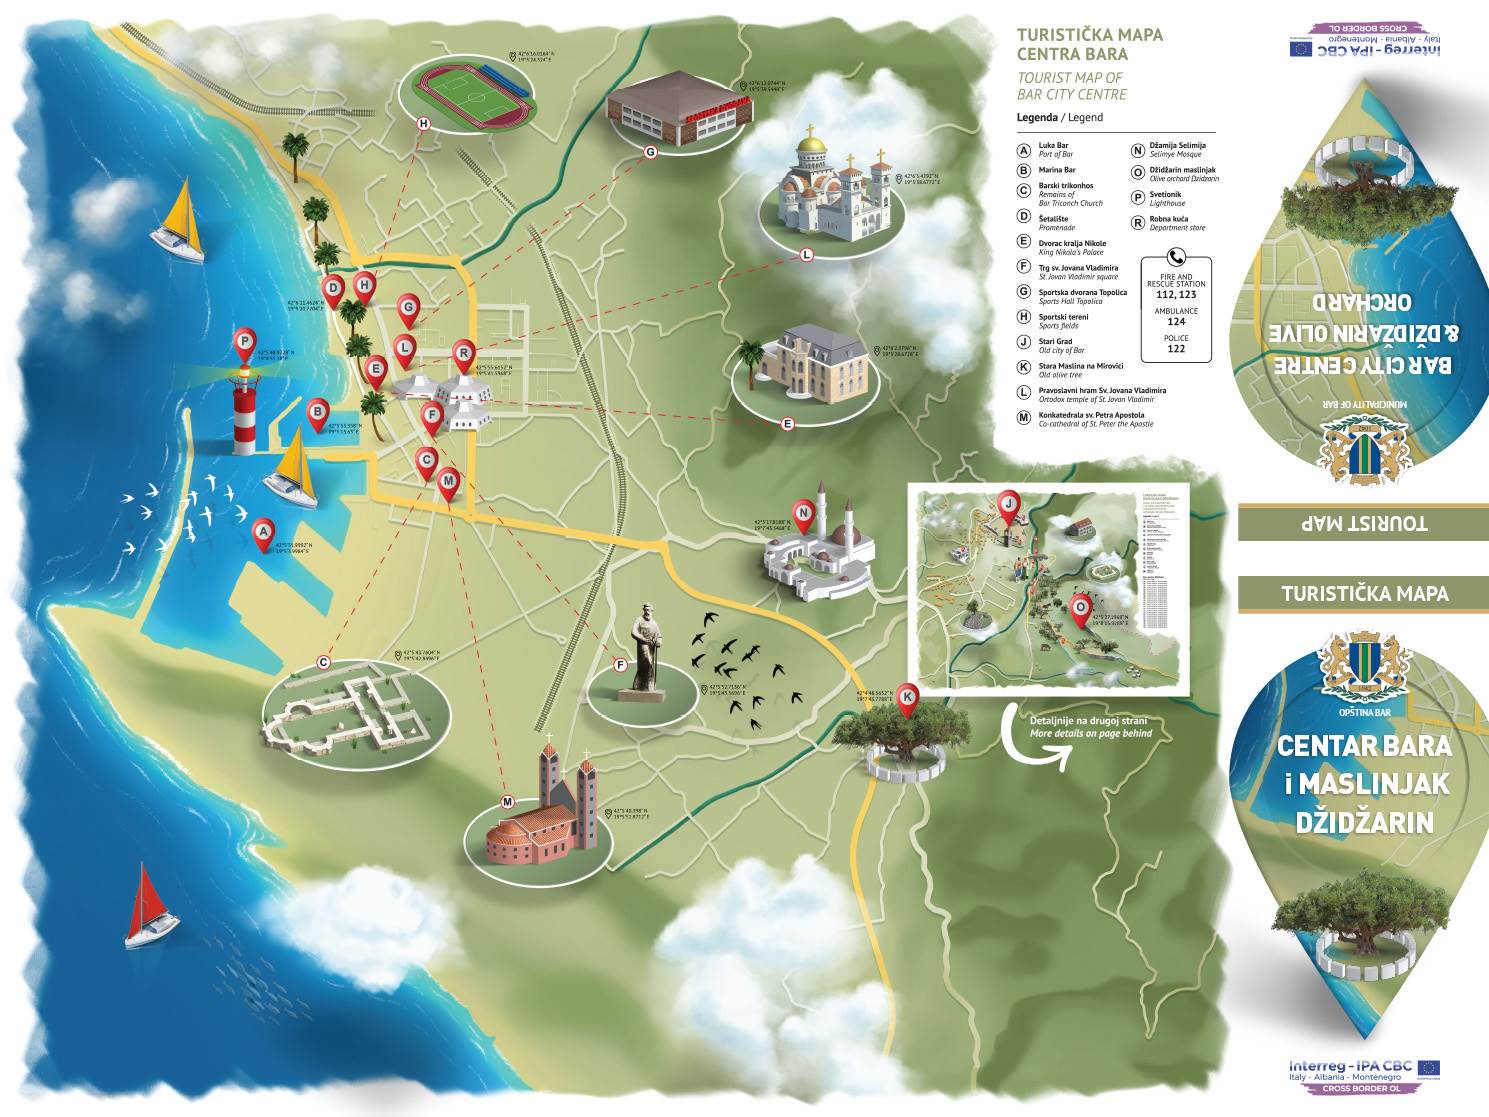  Predstavljena prva turistička mapa puta starih maslina u Džidžarinu 